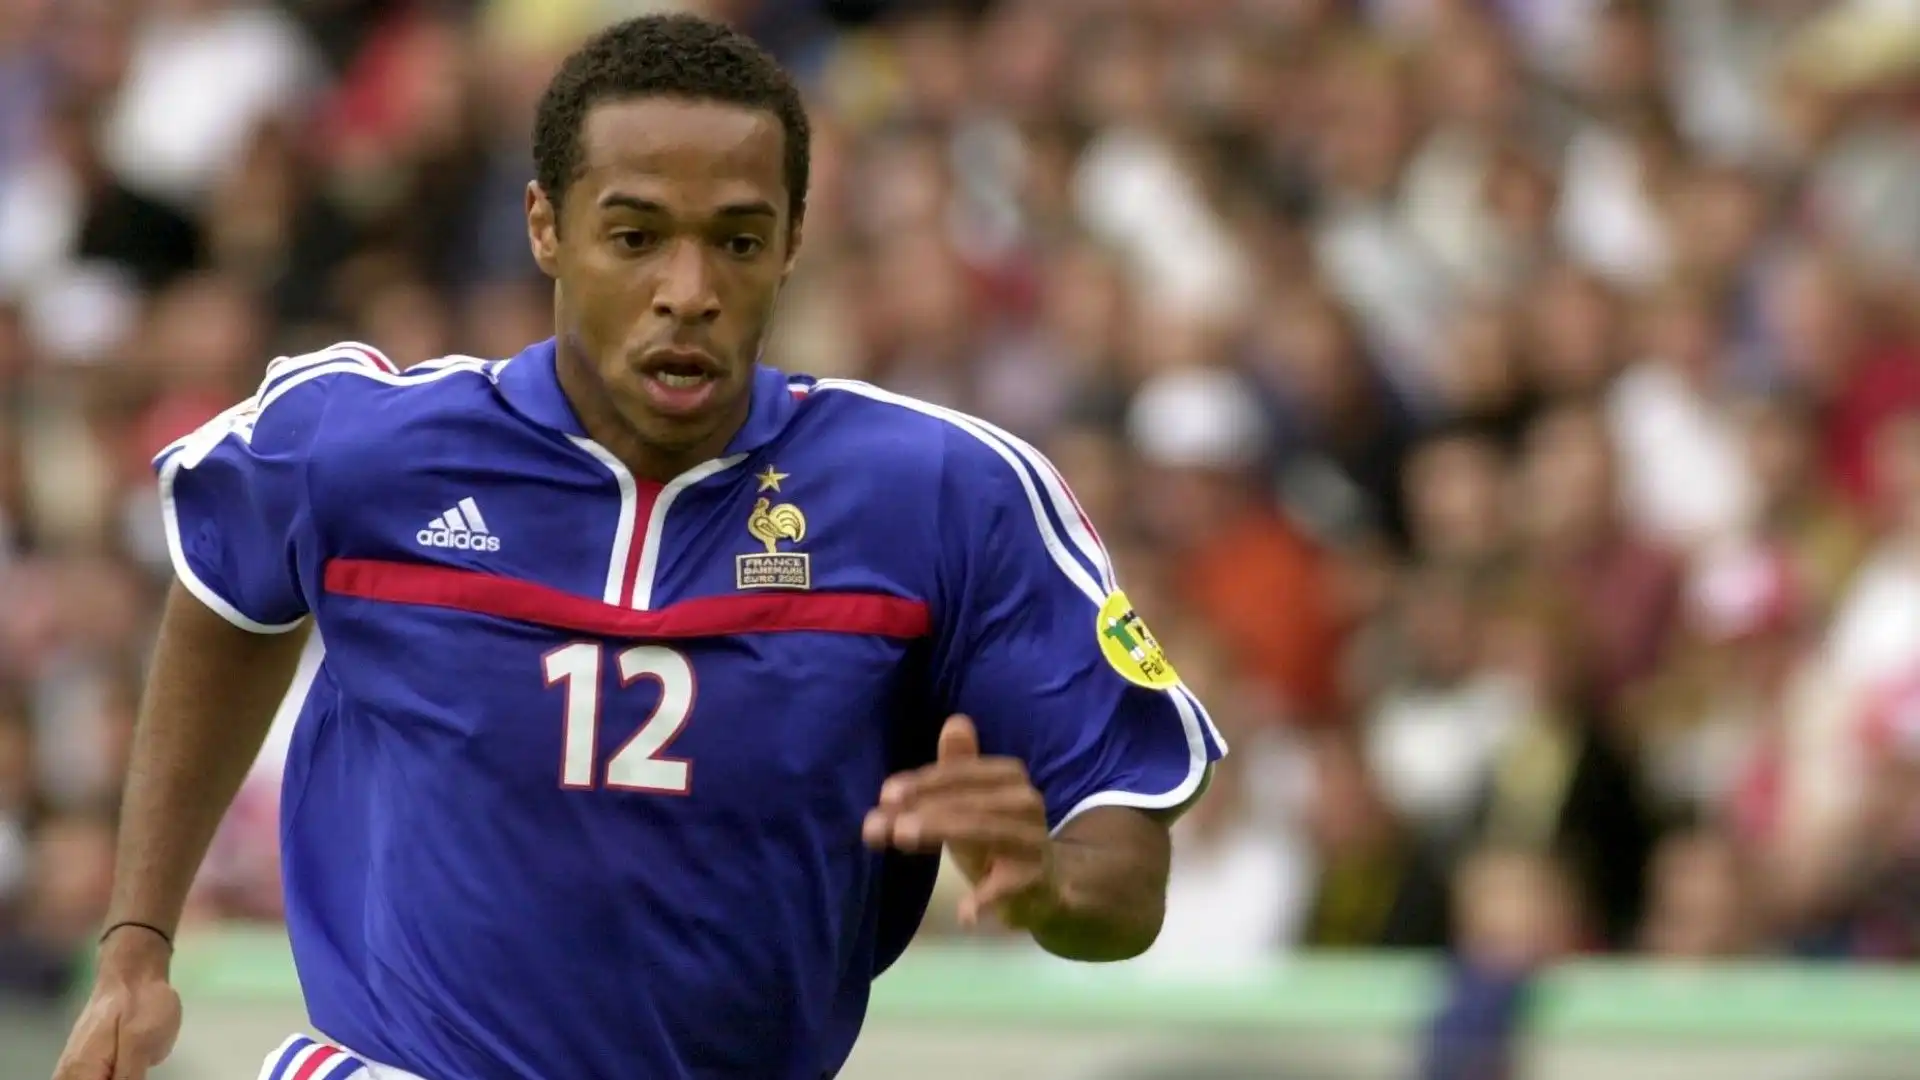 3- Attaccante veloce e molto tecnico: Thierry Henry ha segnato tantissimi gol